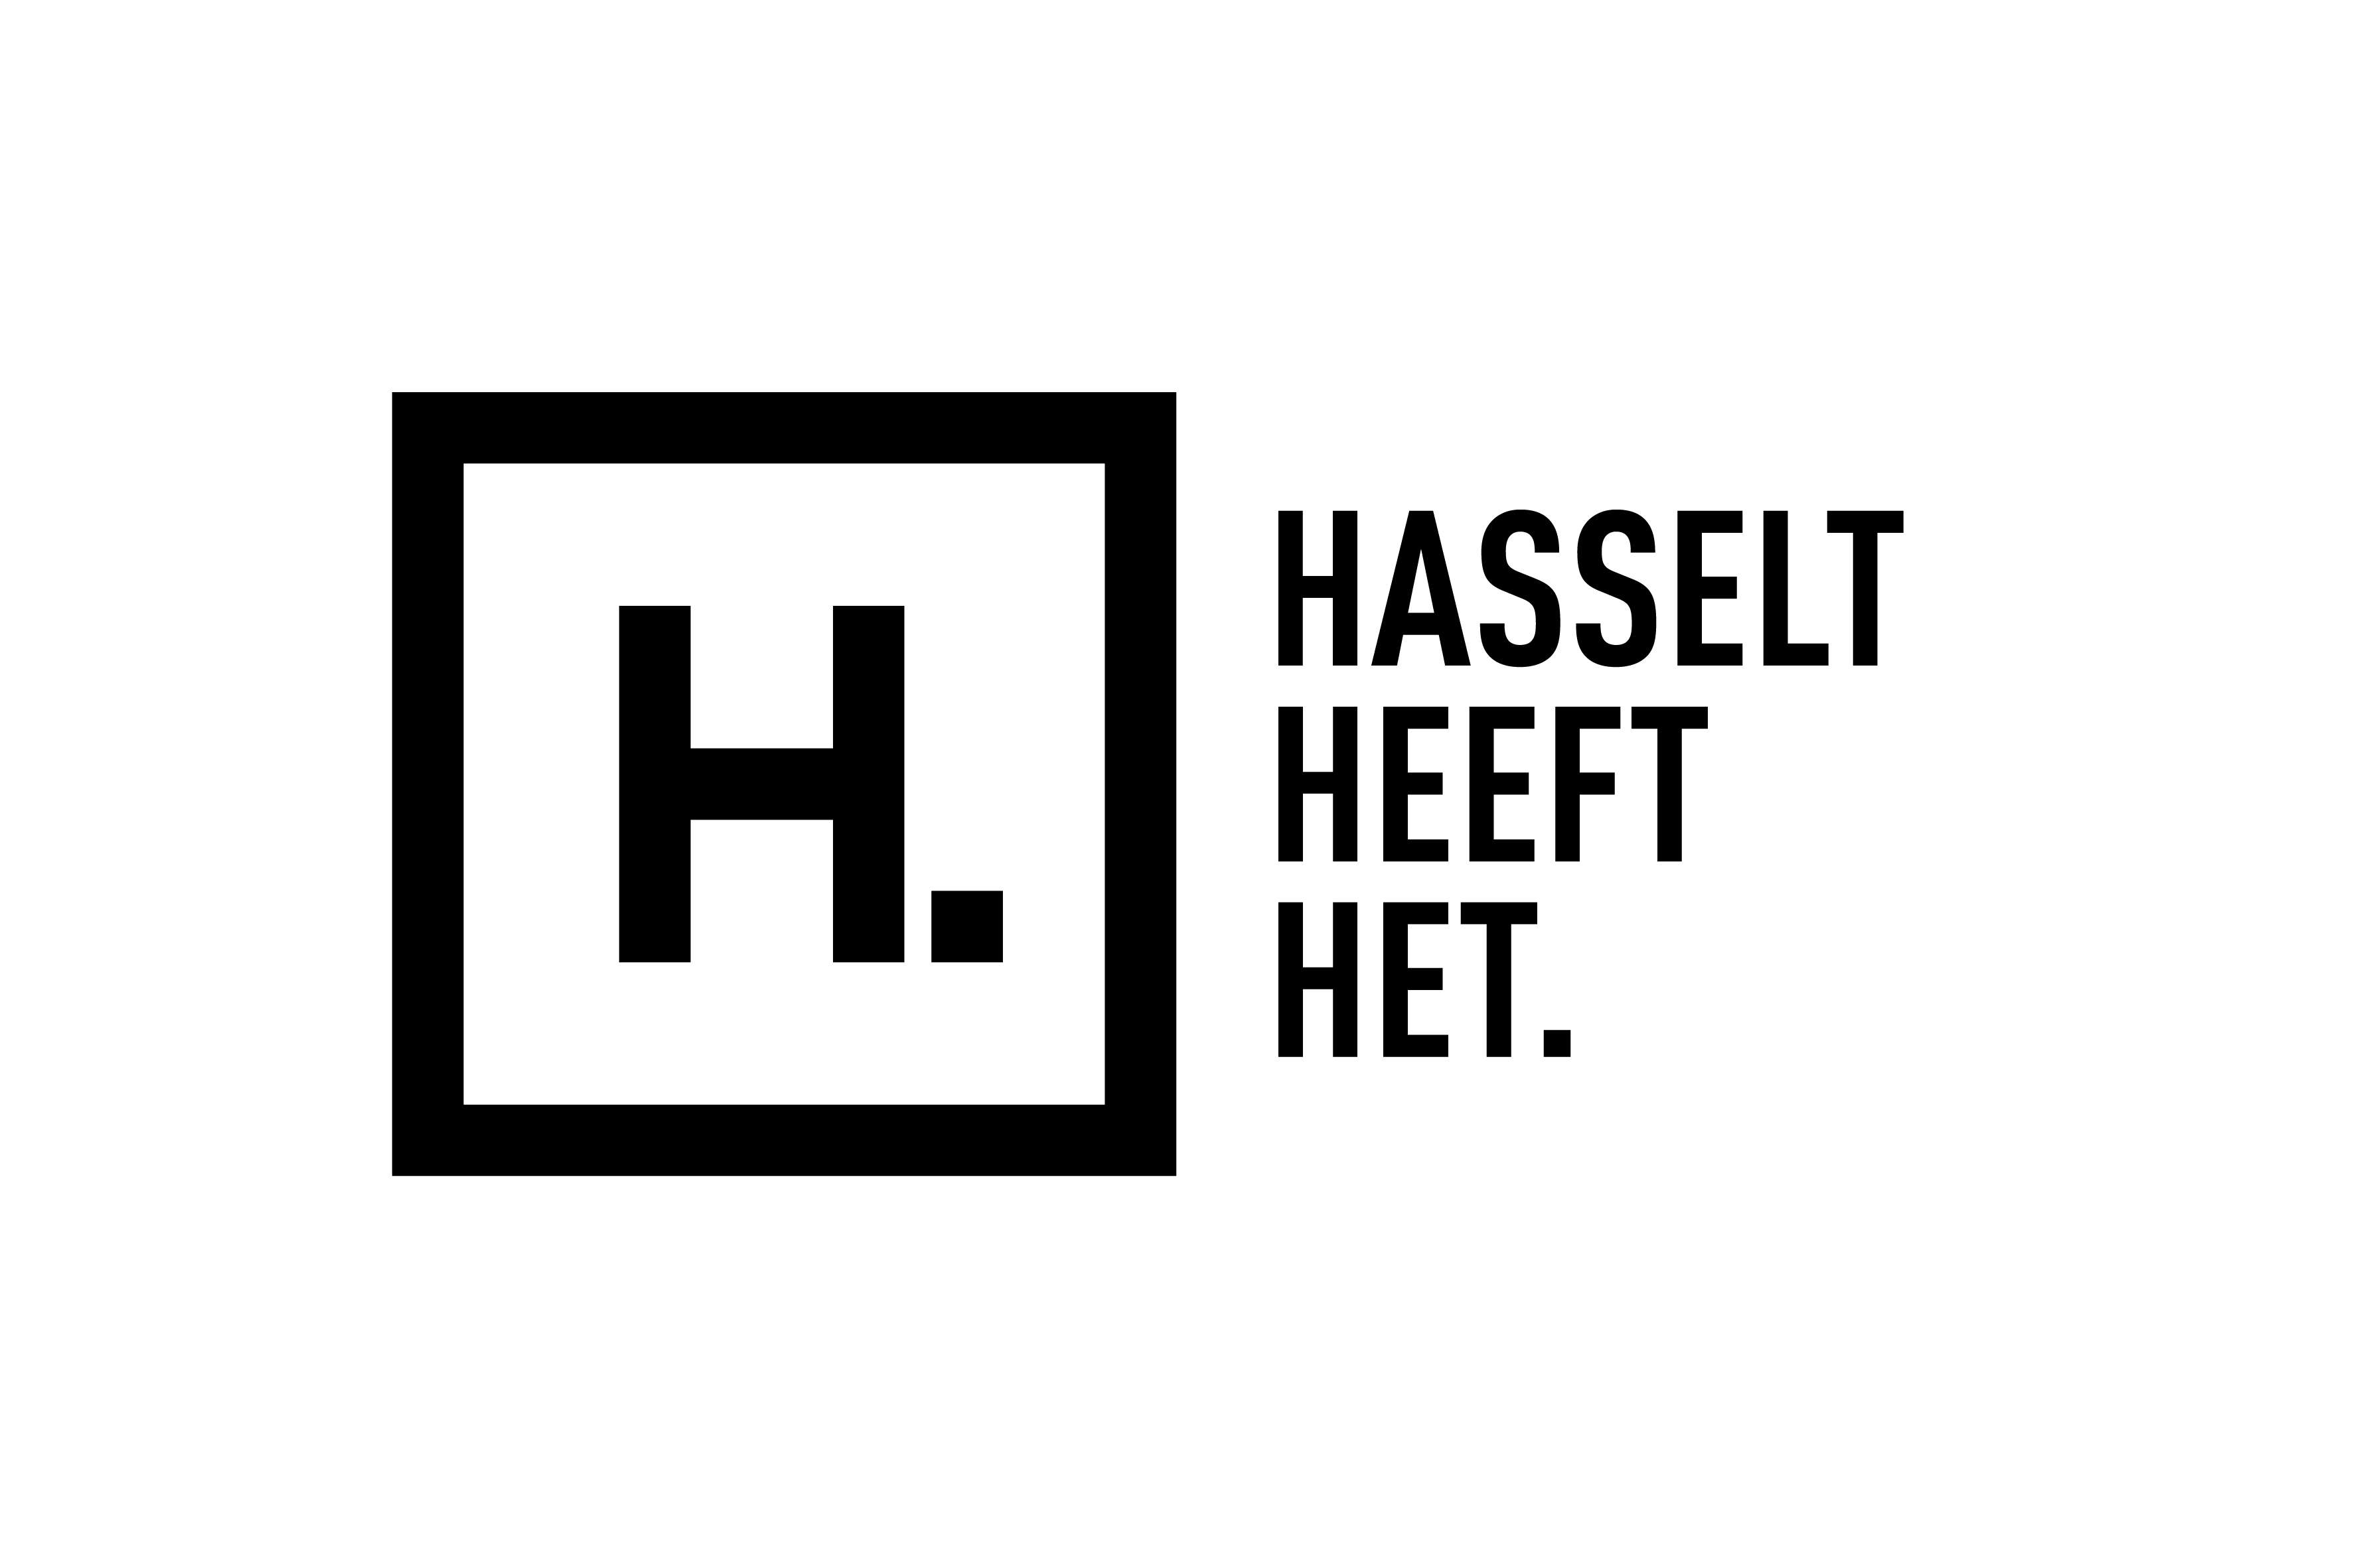 Hasselt Heeft Het Logo Zwart Hires (1)